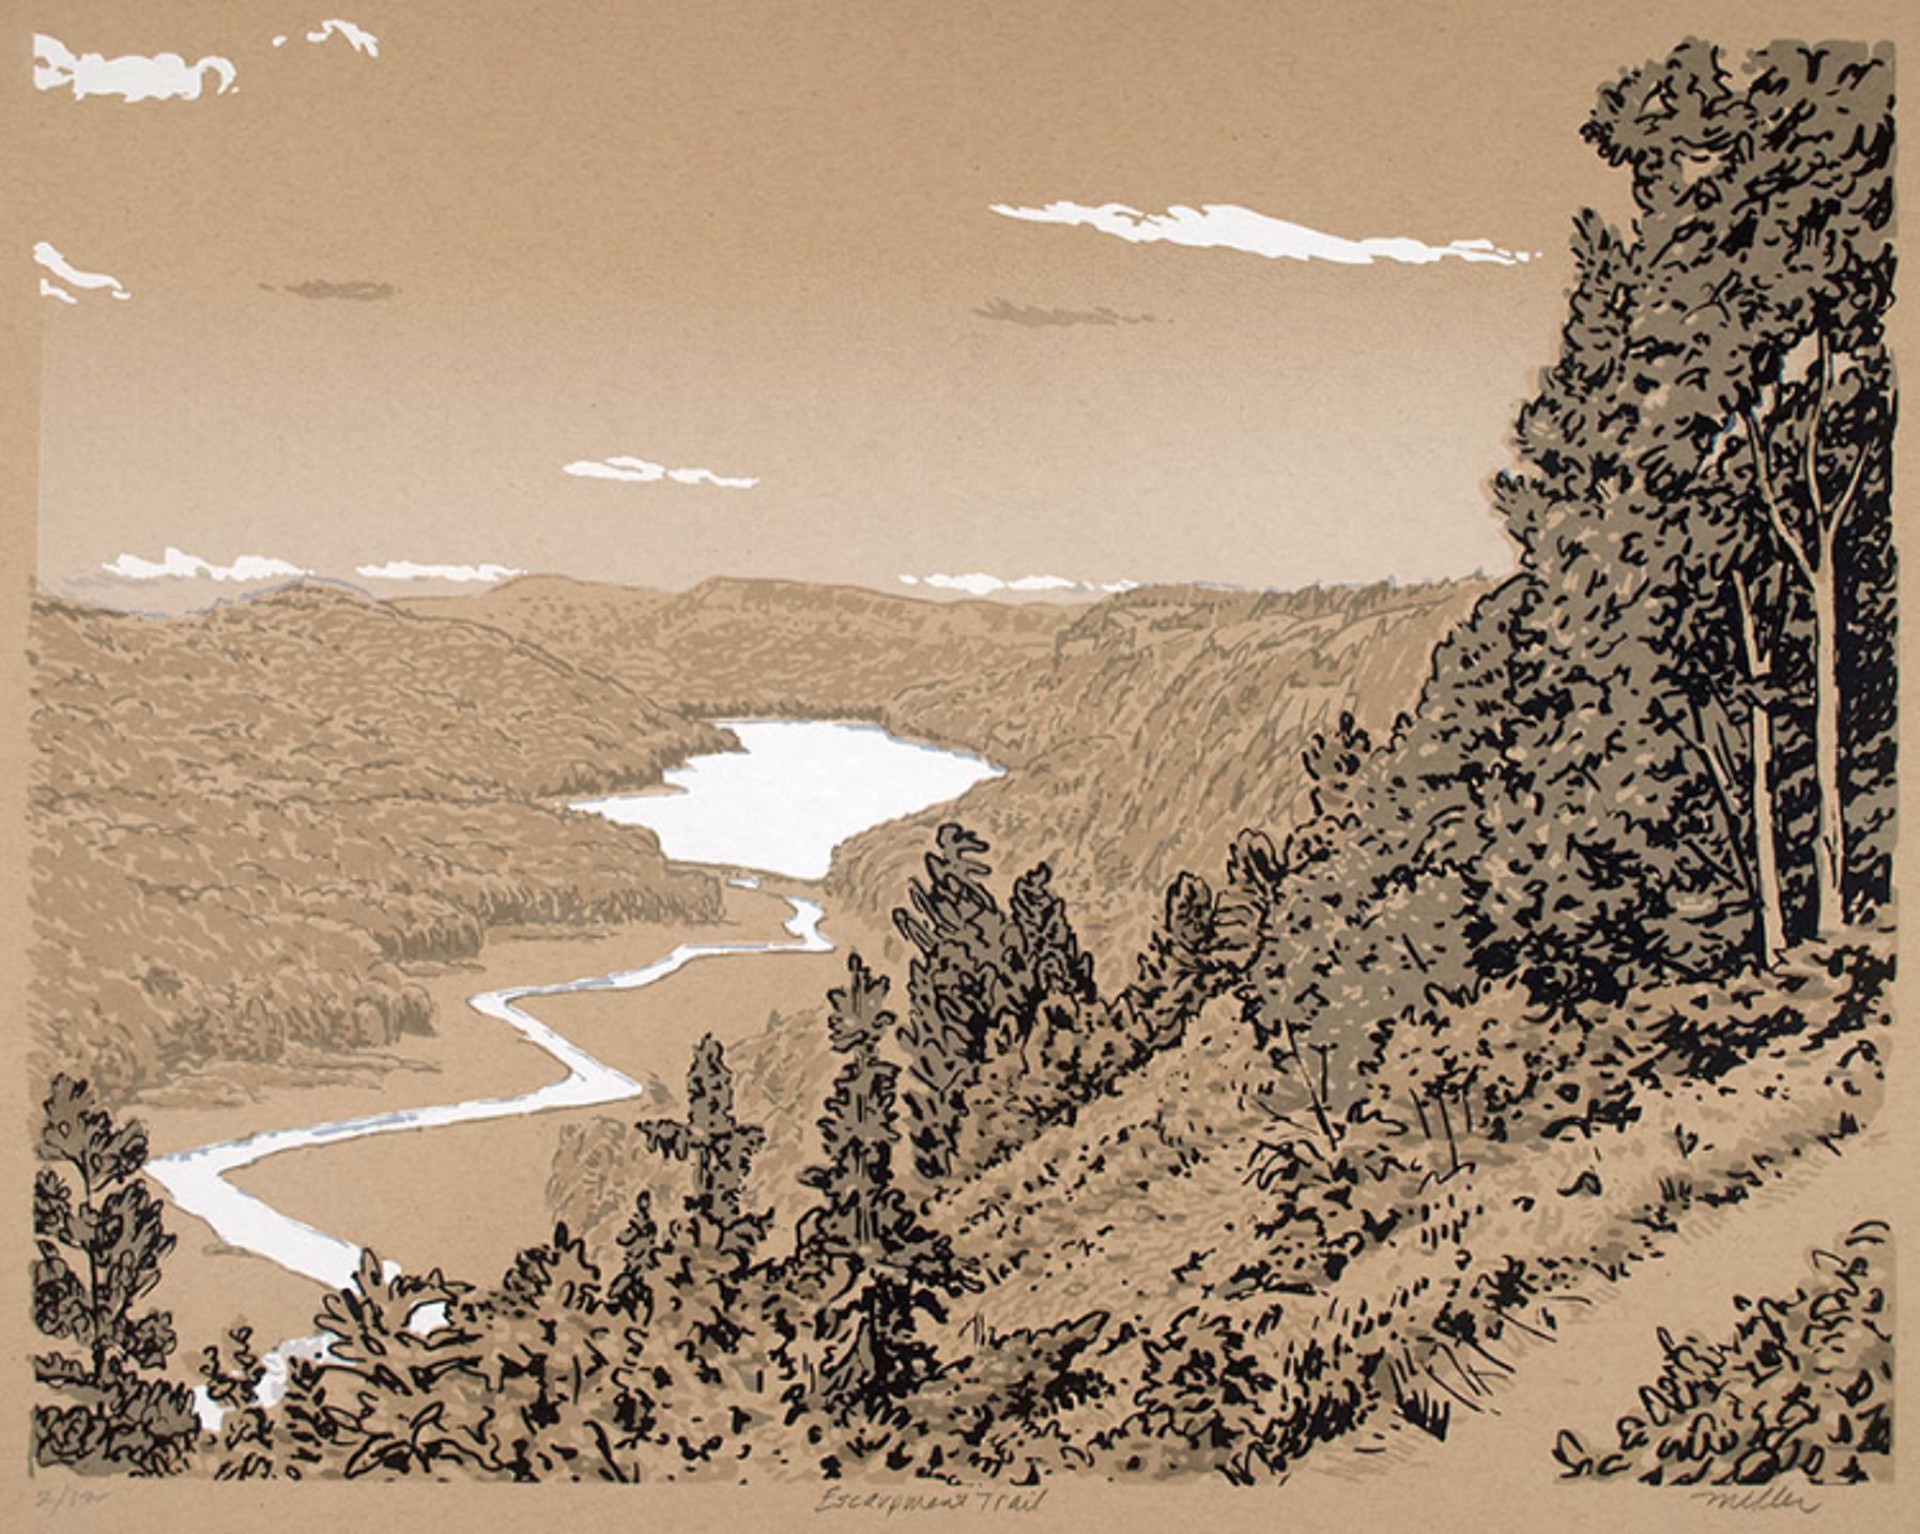 Escarpment Trail by John S. Miller